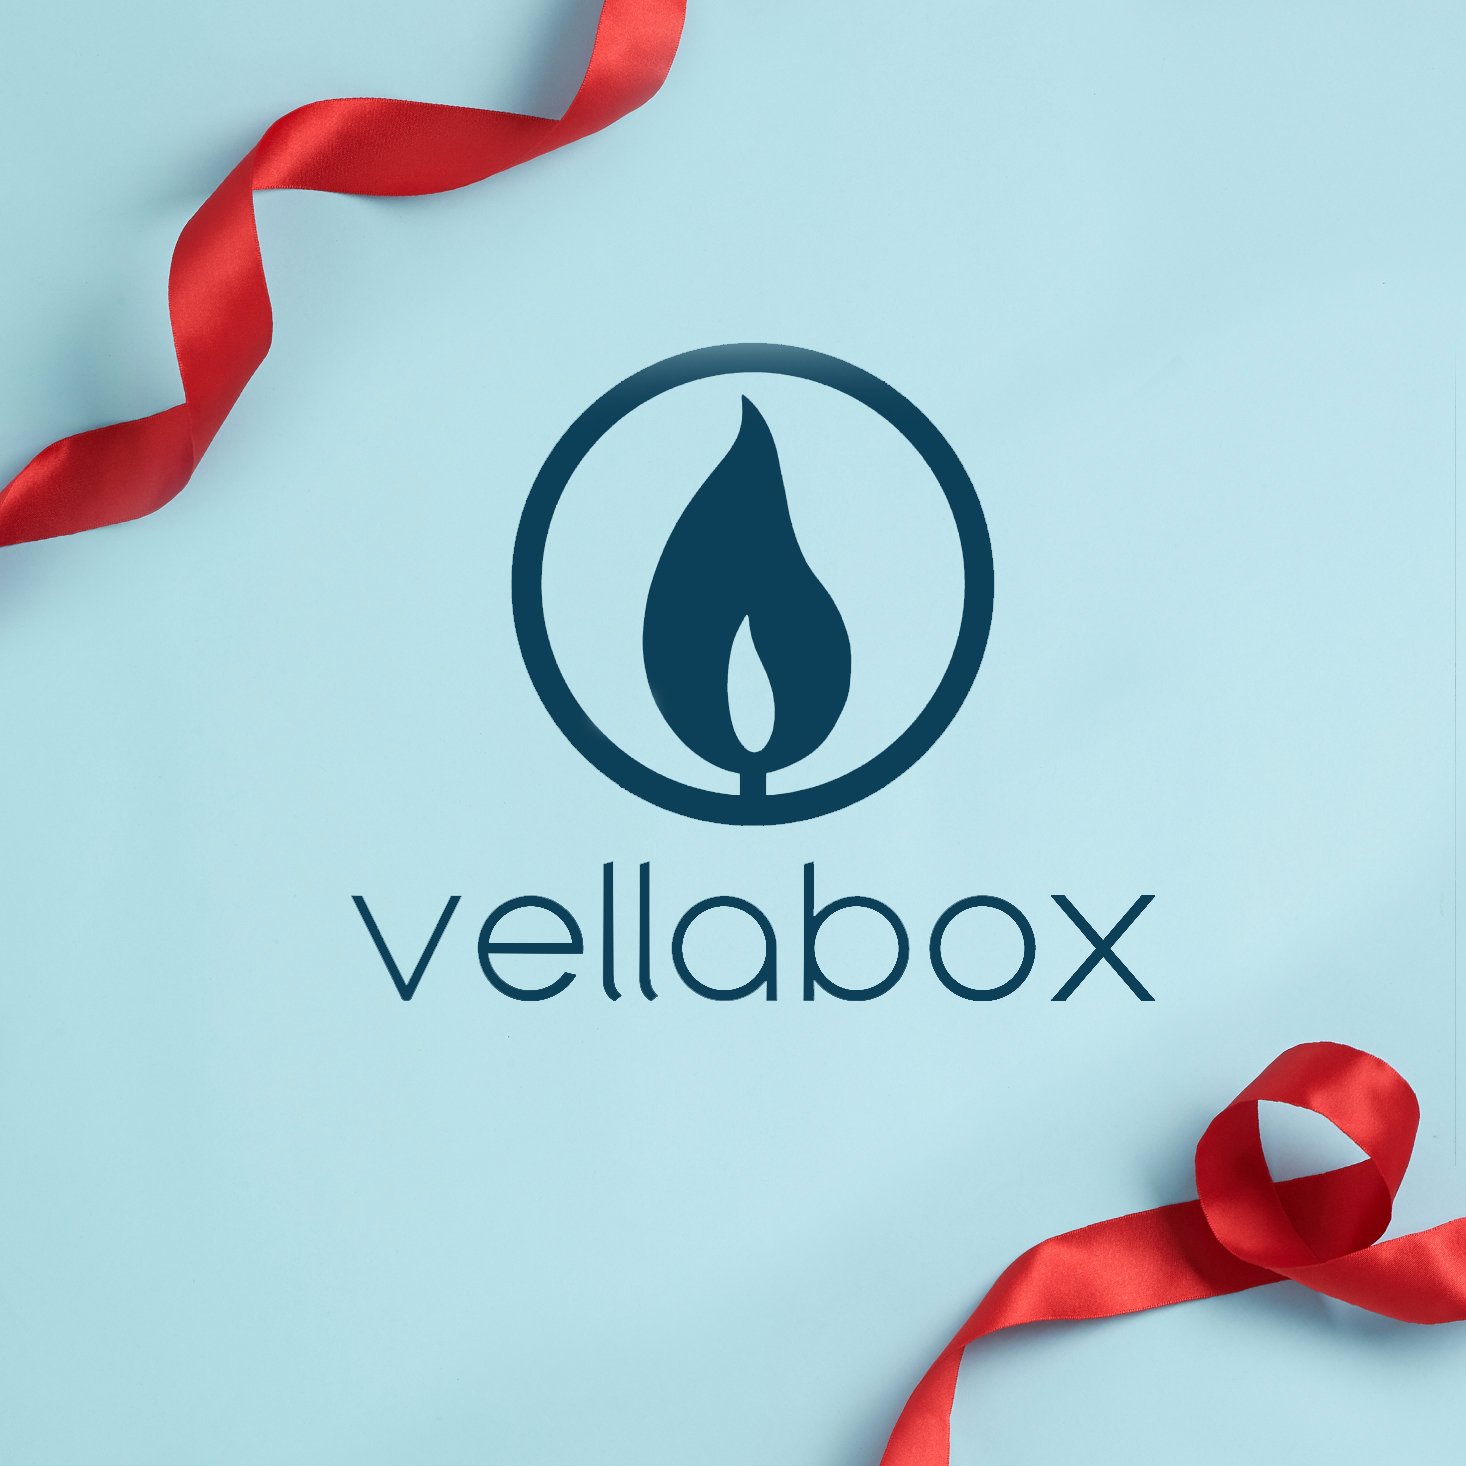 Vellabox – Better Than Black Friday 2020 Deal!